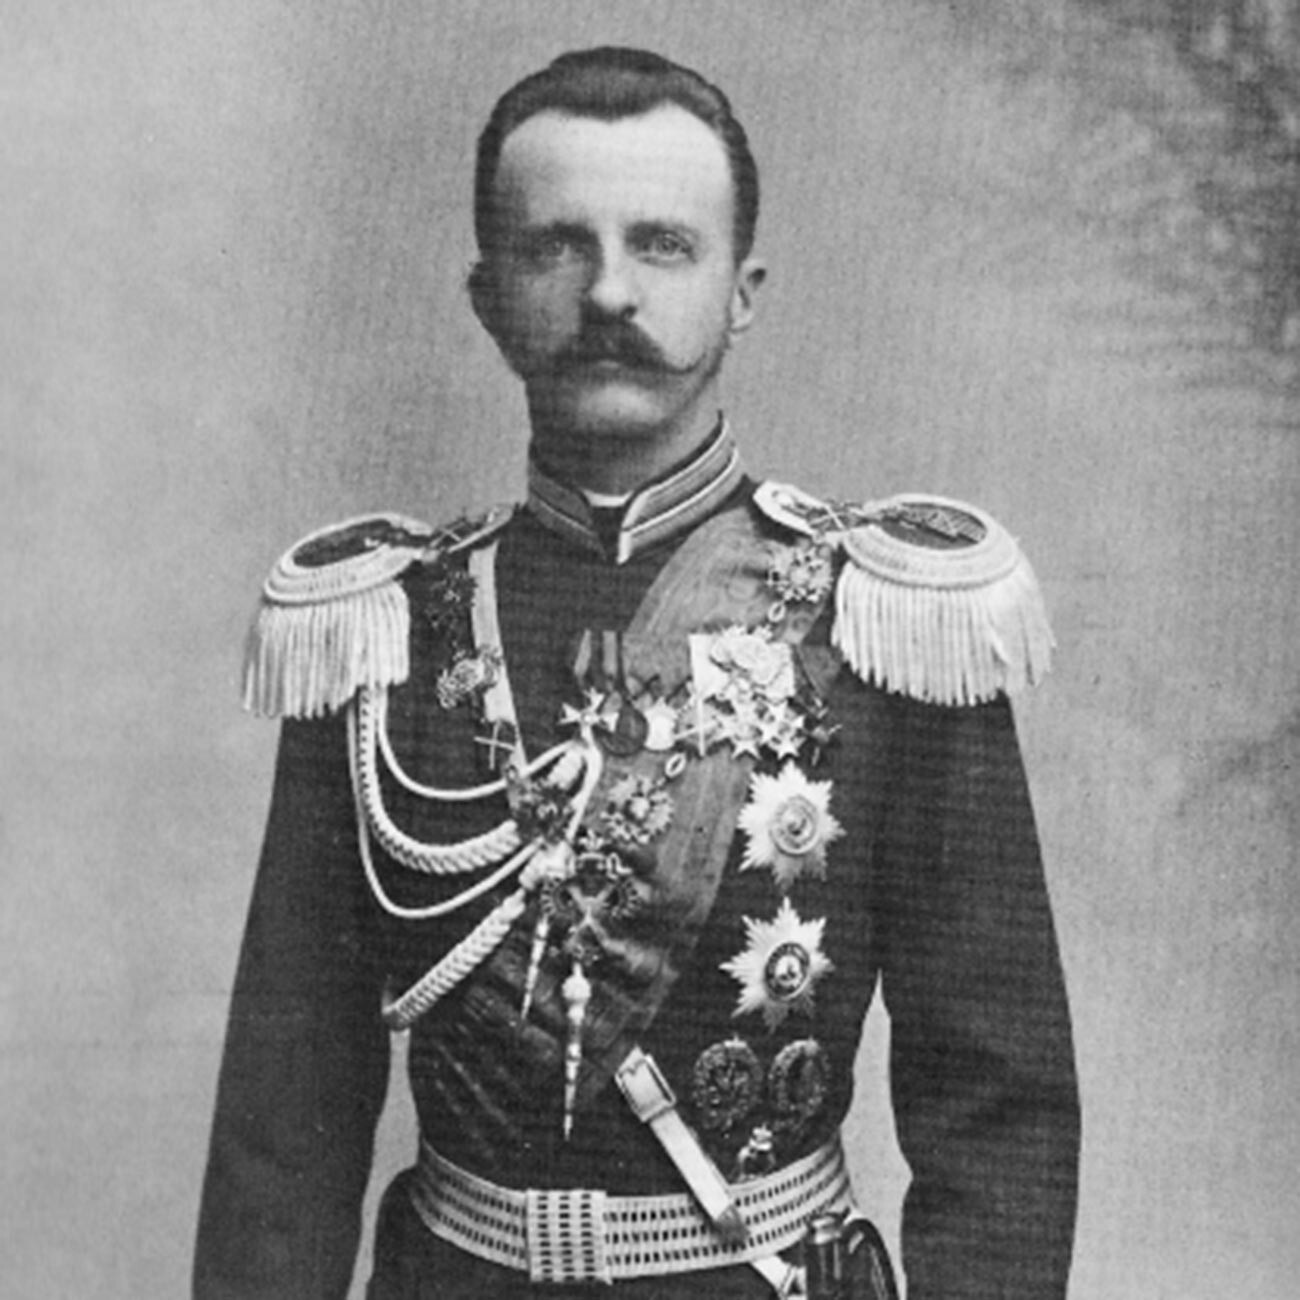 Il Granduca Pjotr Nikolaevich Romanov (1864-1931)
